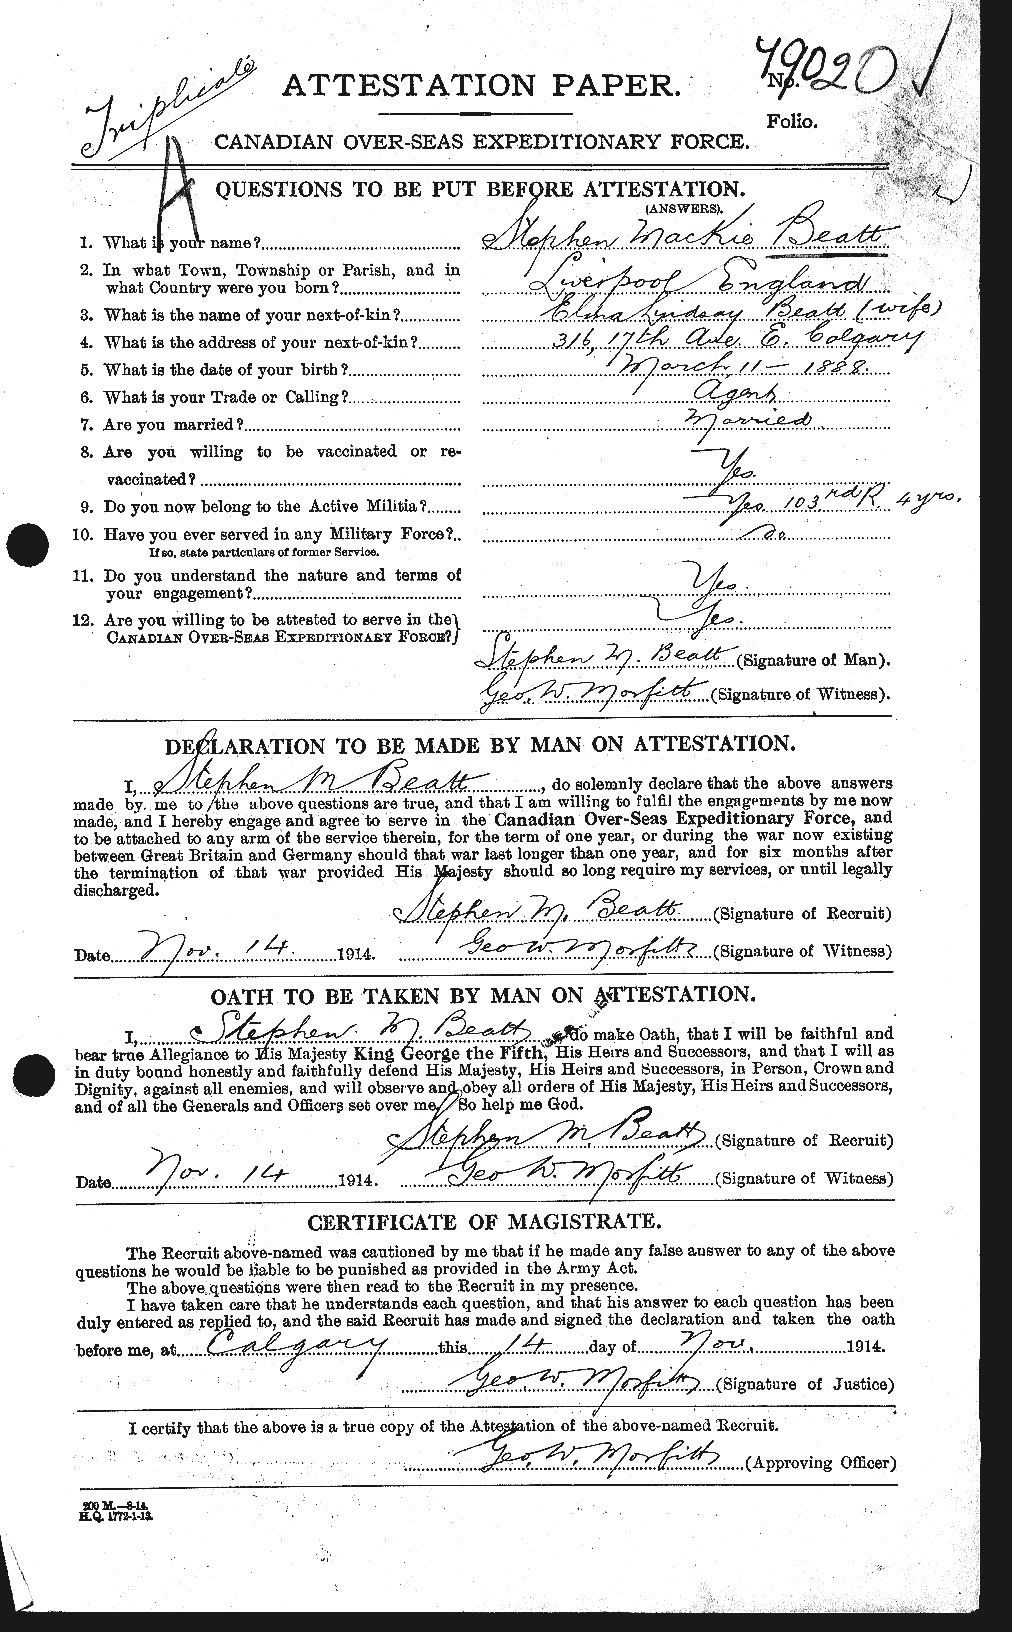 Dossiers du Personnel de la Première Guerre mondiale - CEC 230623a